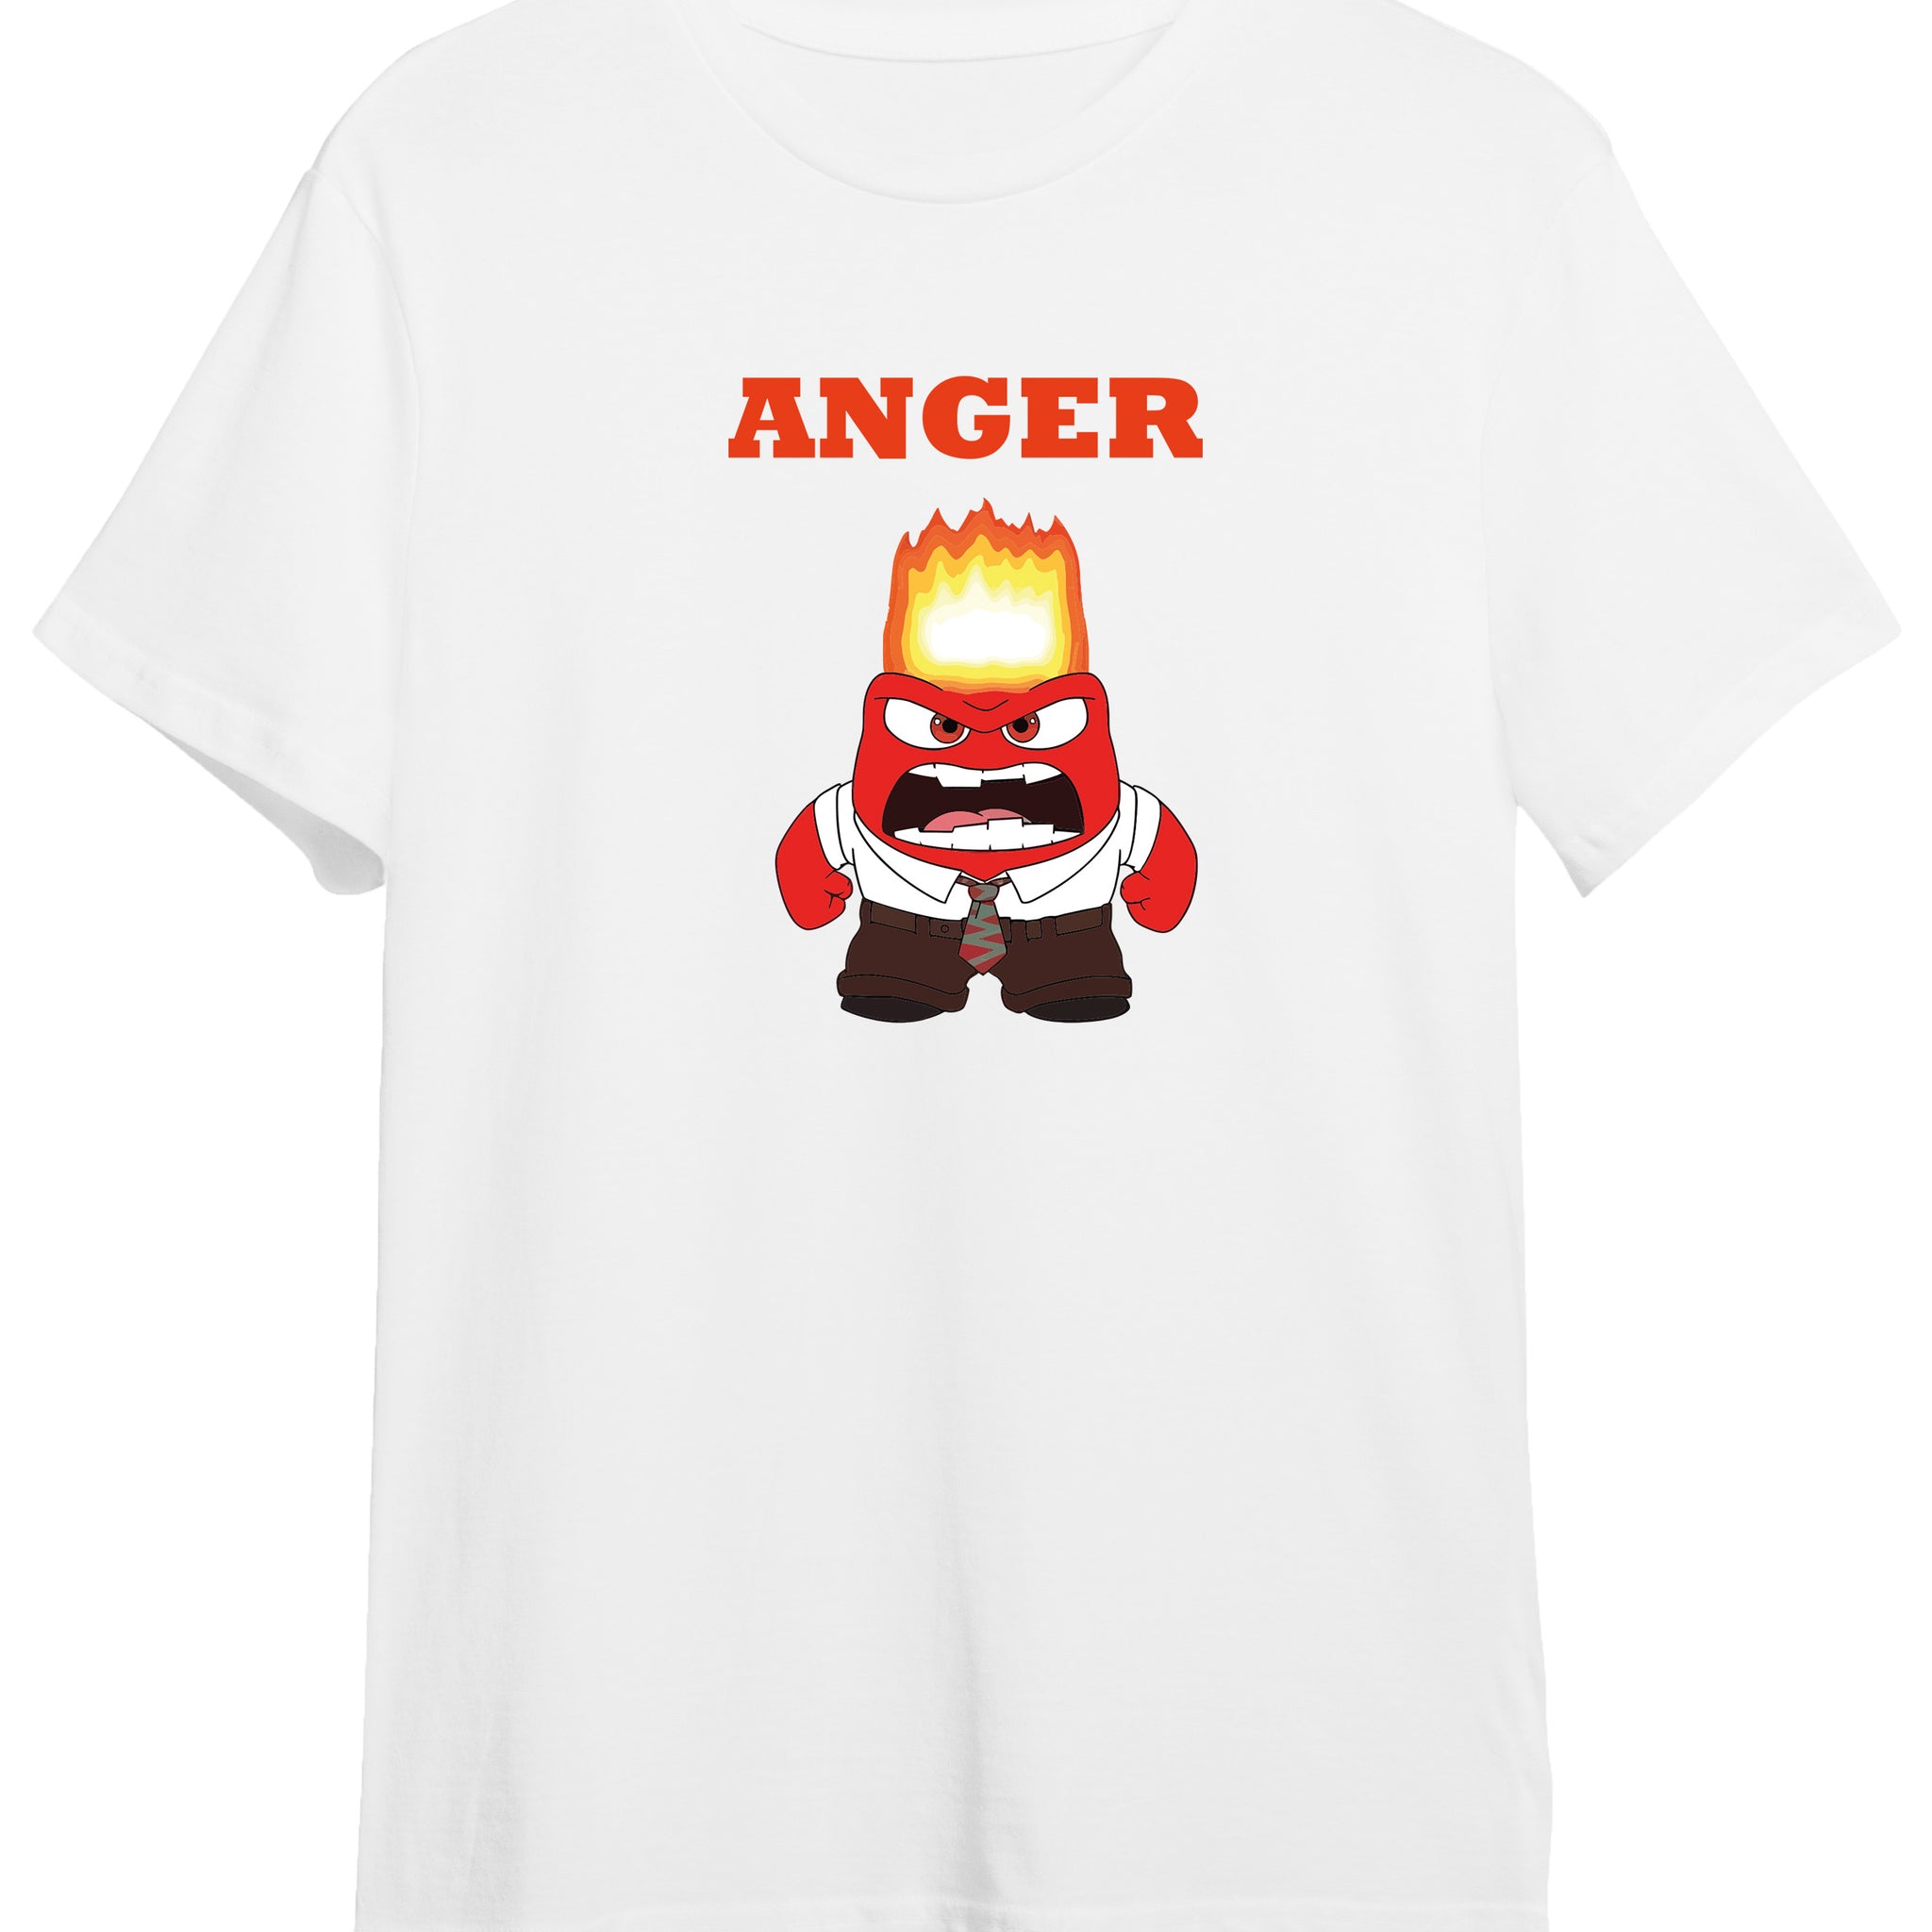 Inside Out Anger - Regular Tshirt